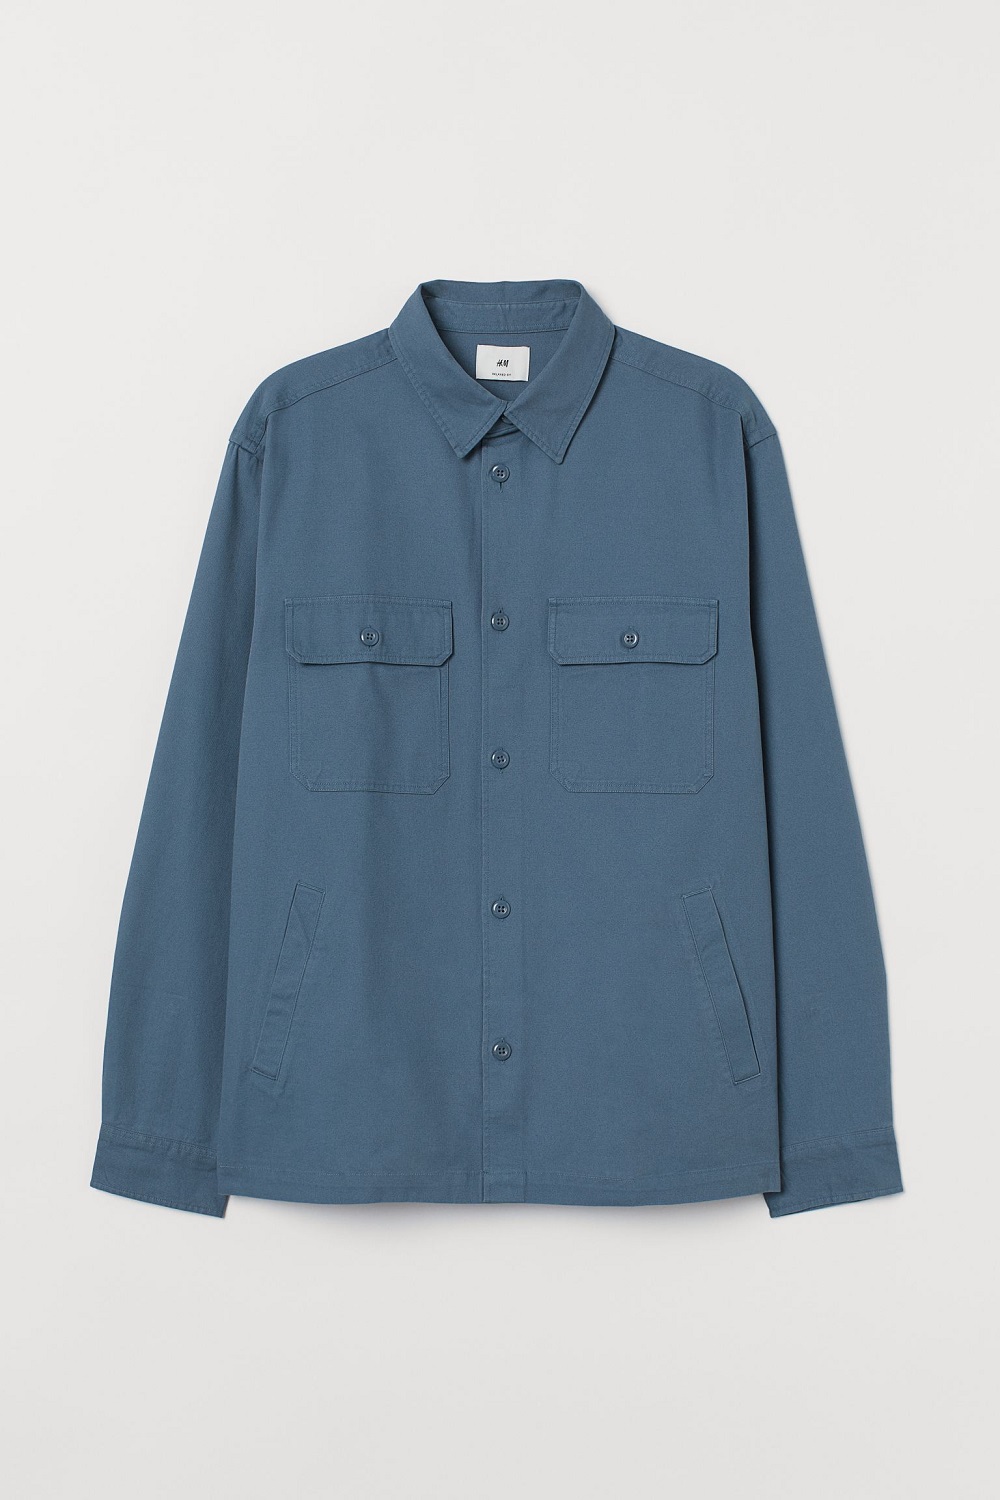 H&M košulja-jakna proljeće 2021.